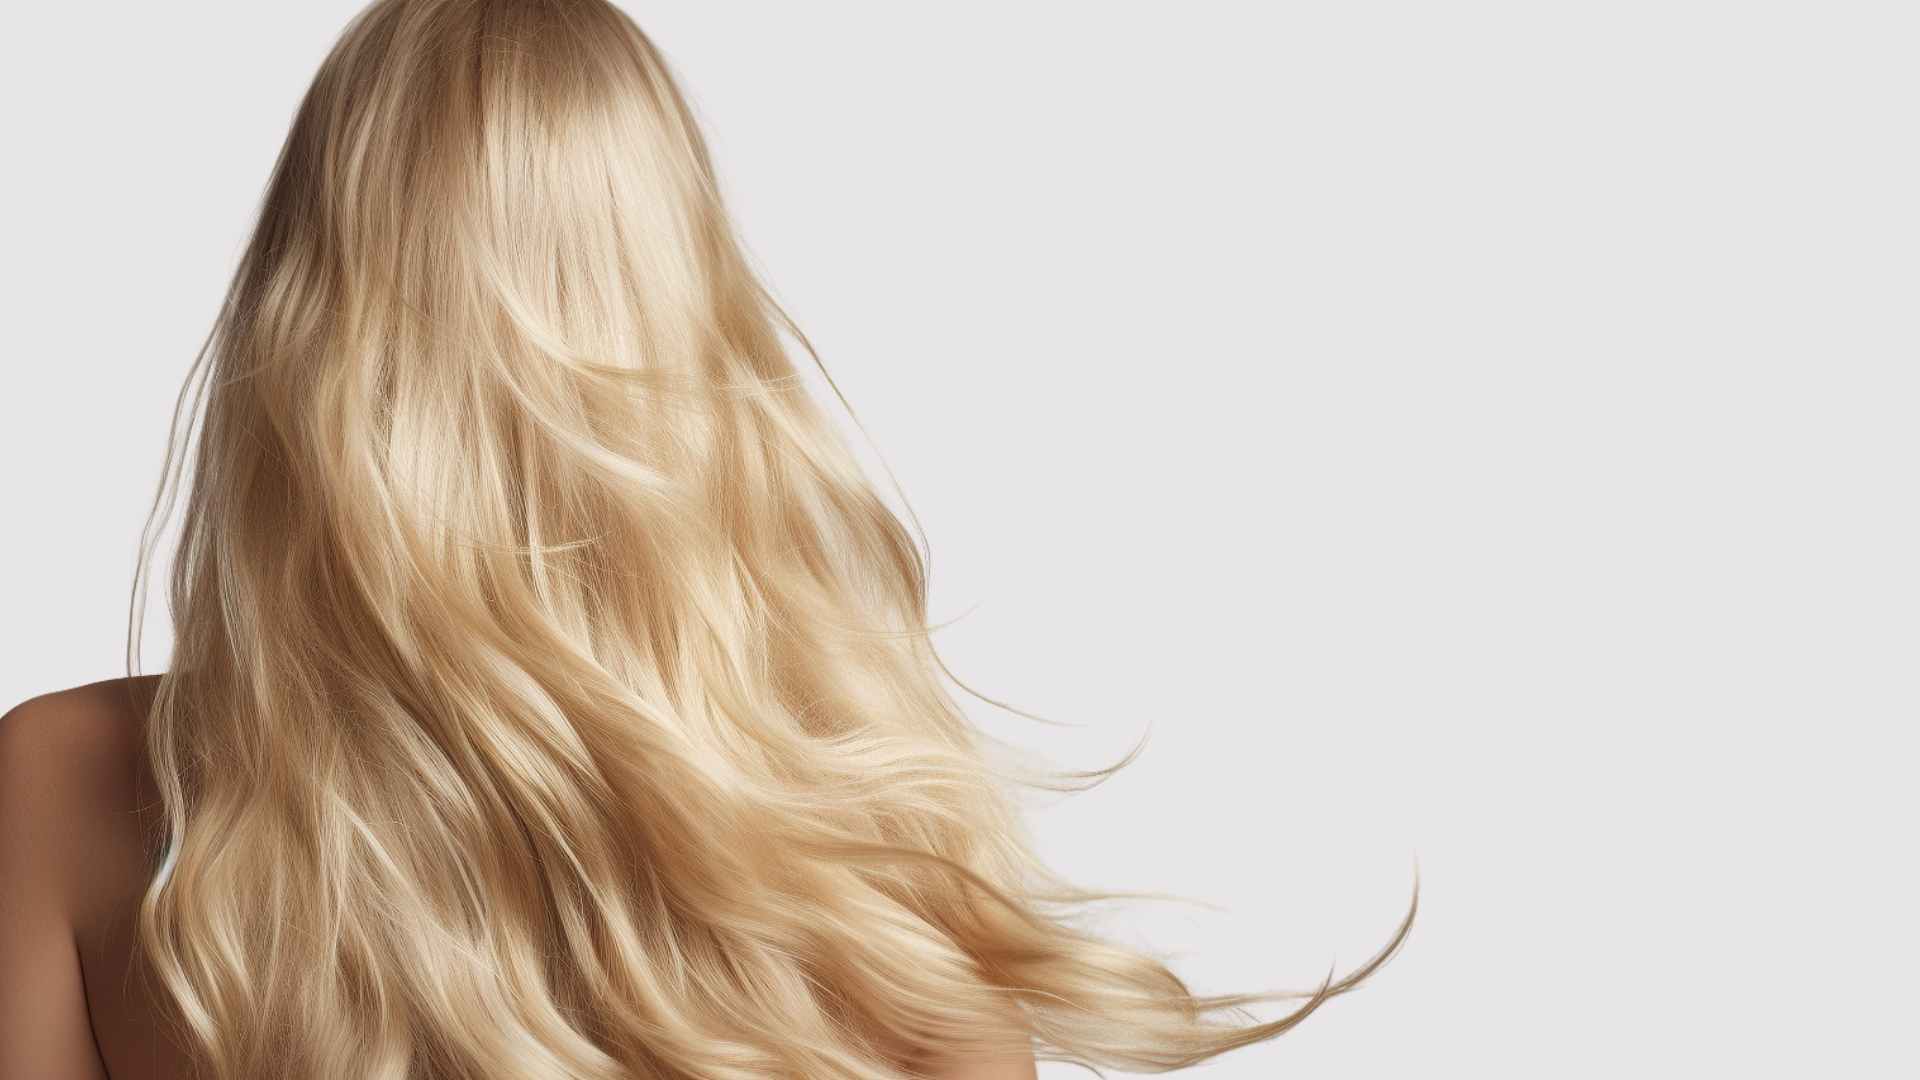 Shiny Hair, How to Get Shiny Hair